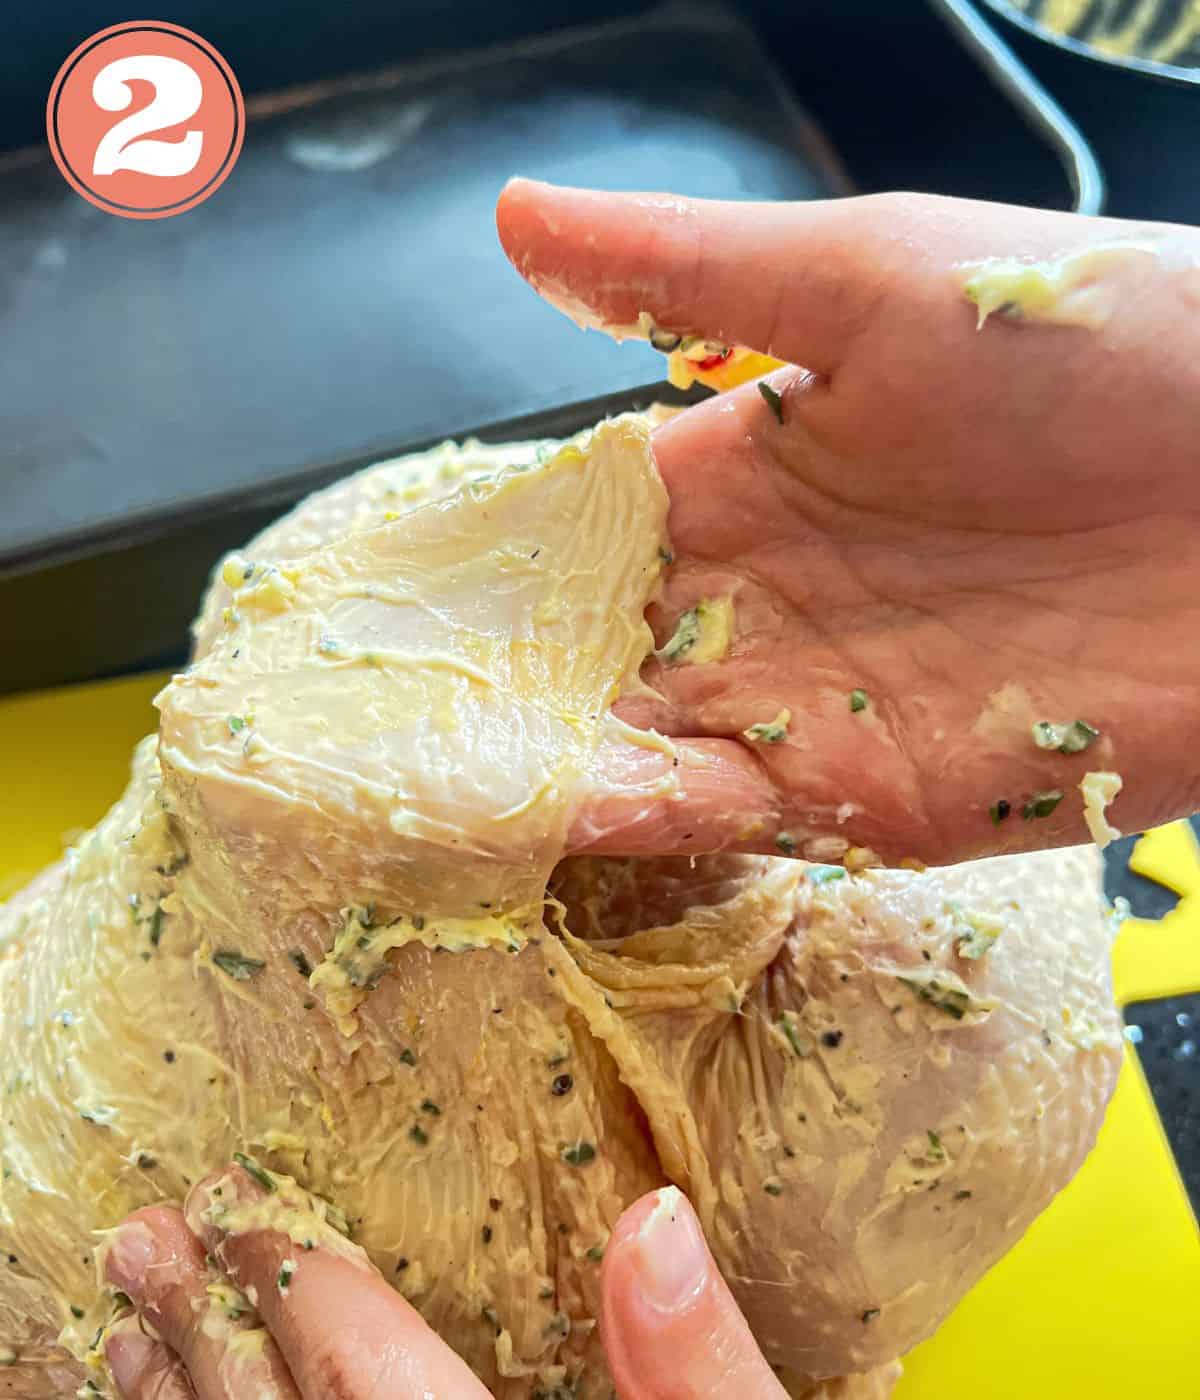 Garlic butter being put under a chicken skin.